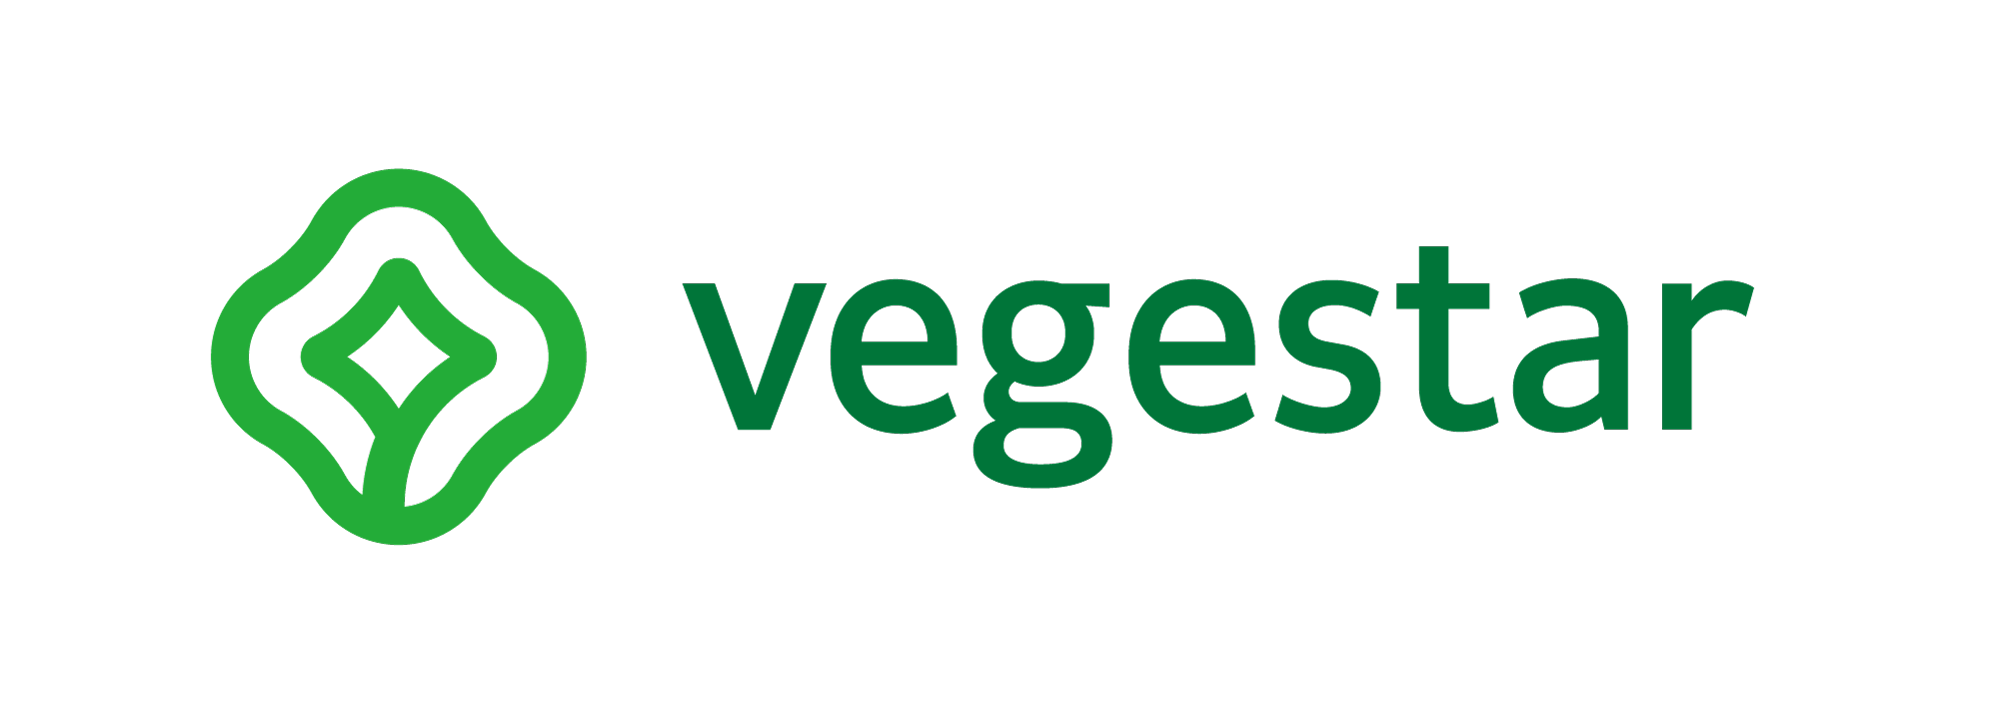 베지스타/ Vegestar Logo